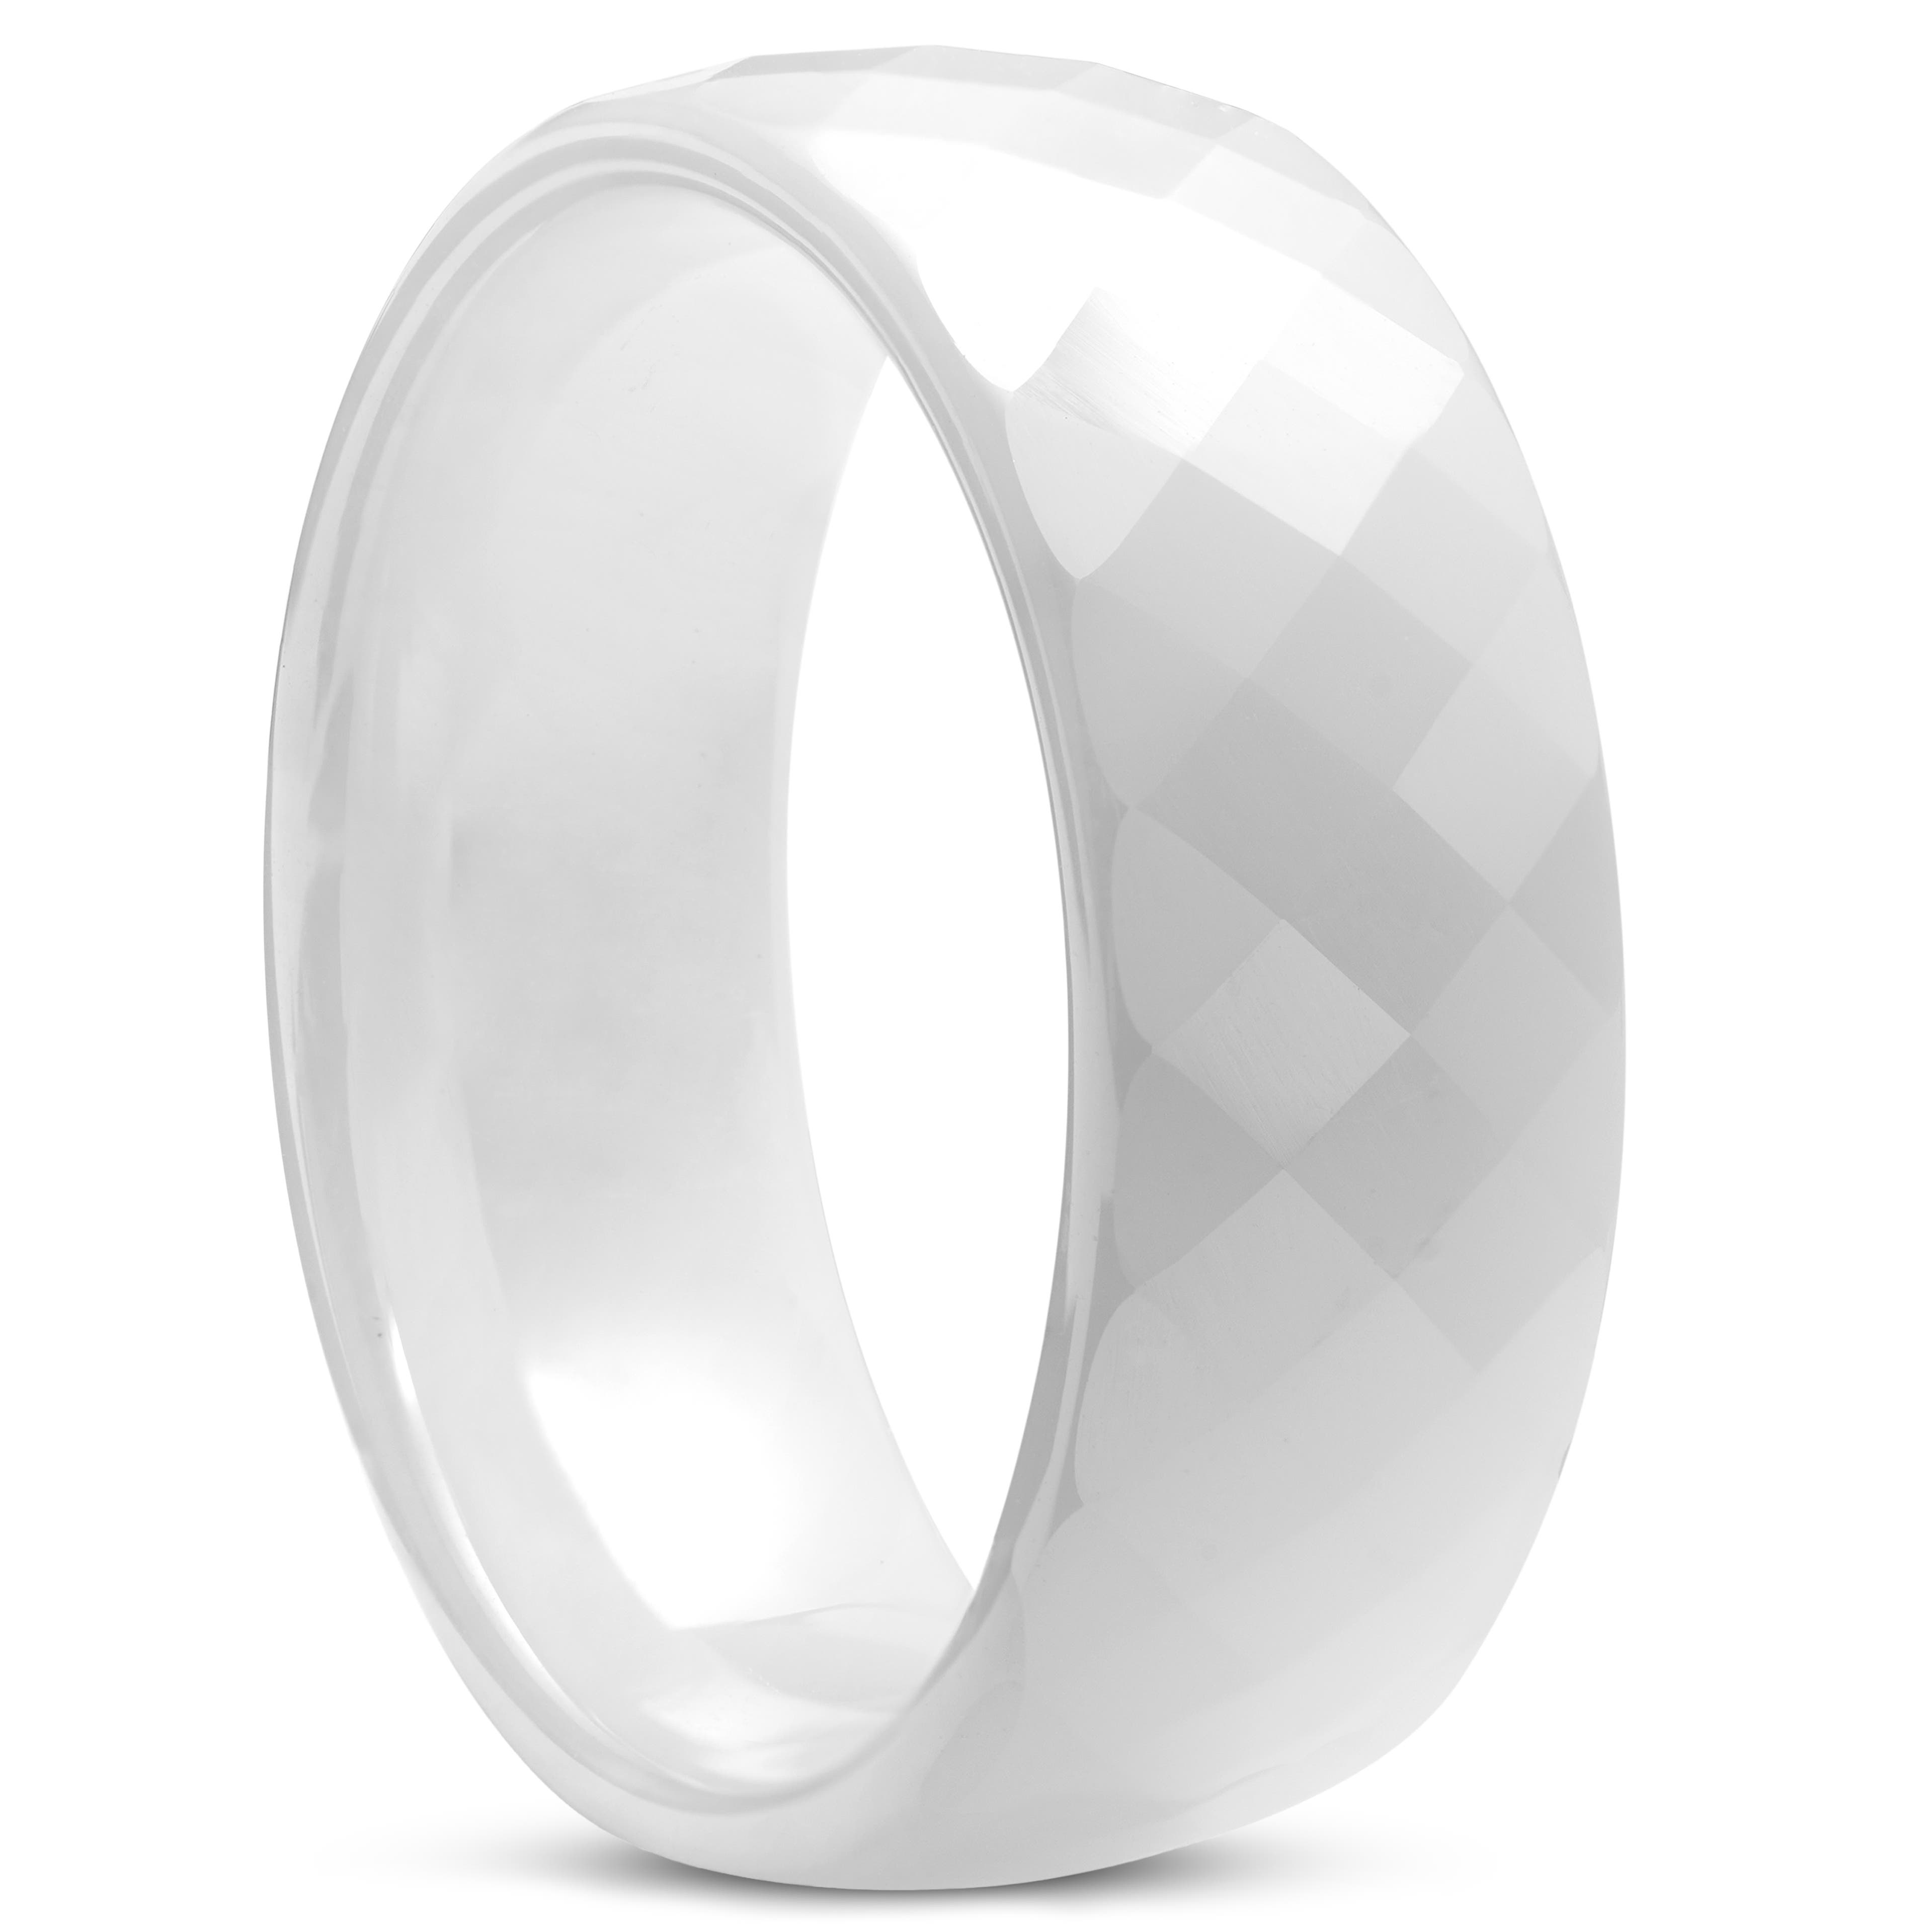 NEW!!! White Ceramic Ring Blanks 8mm!